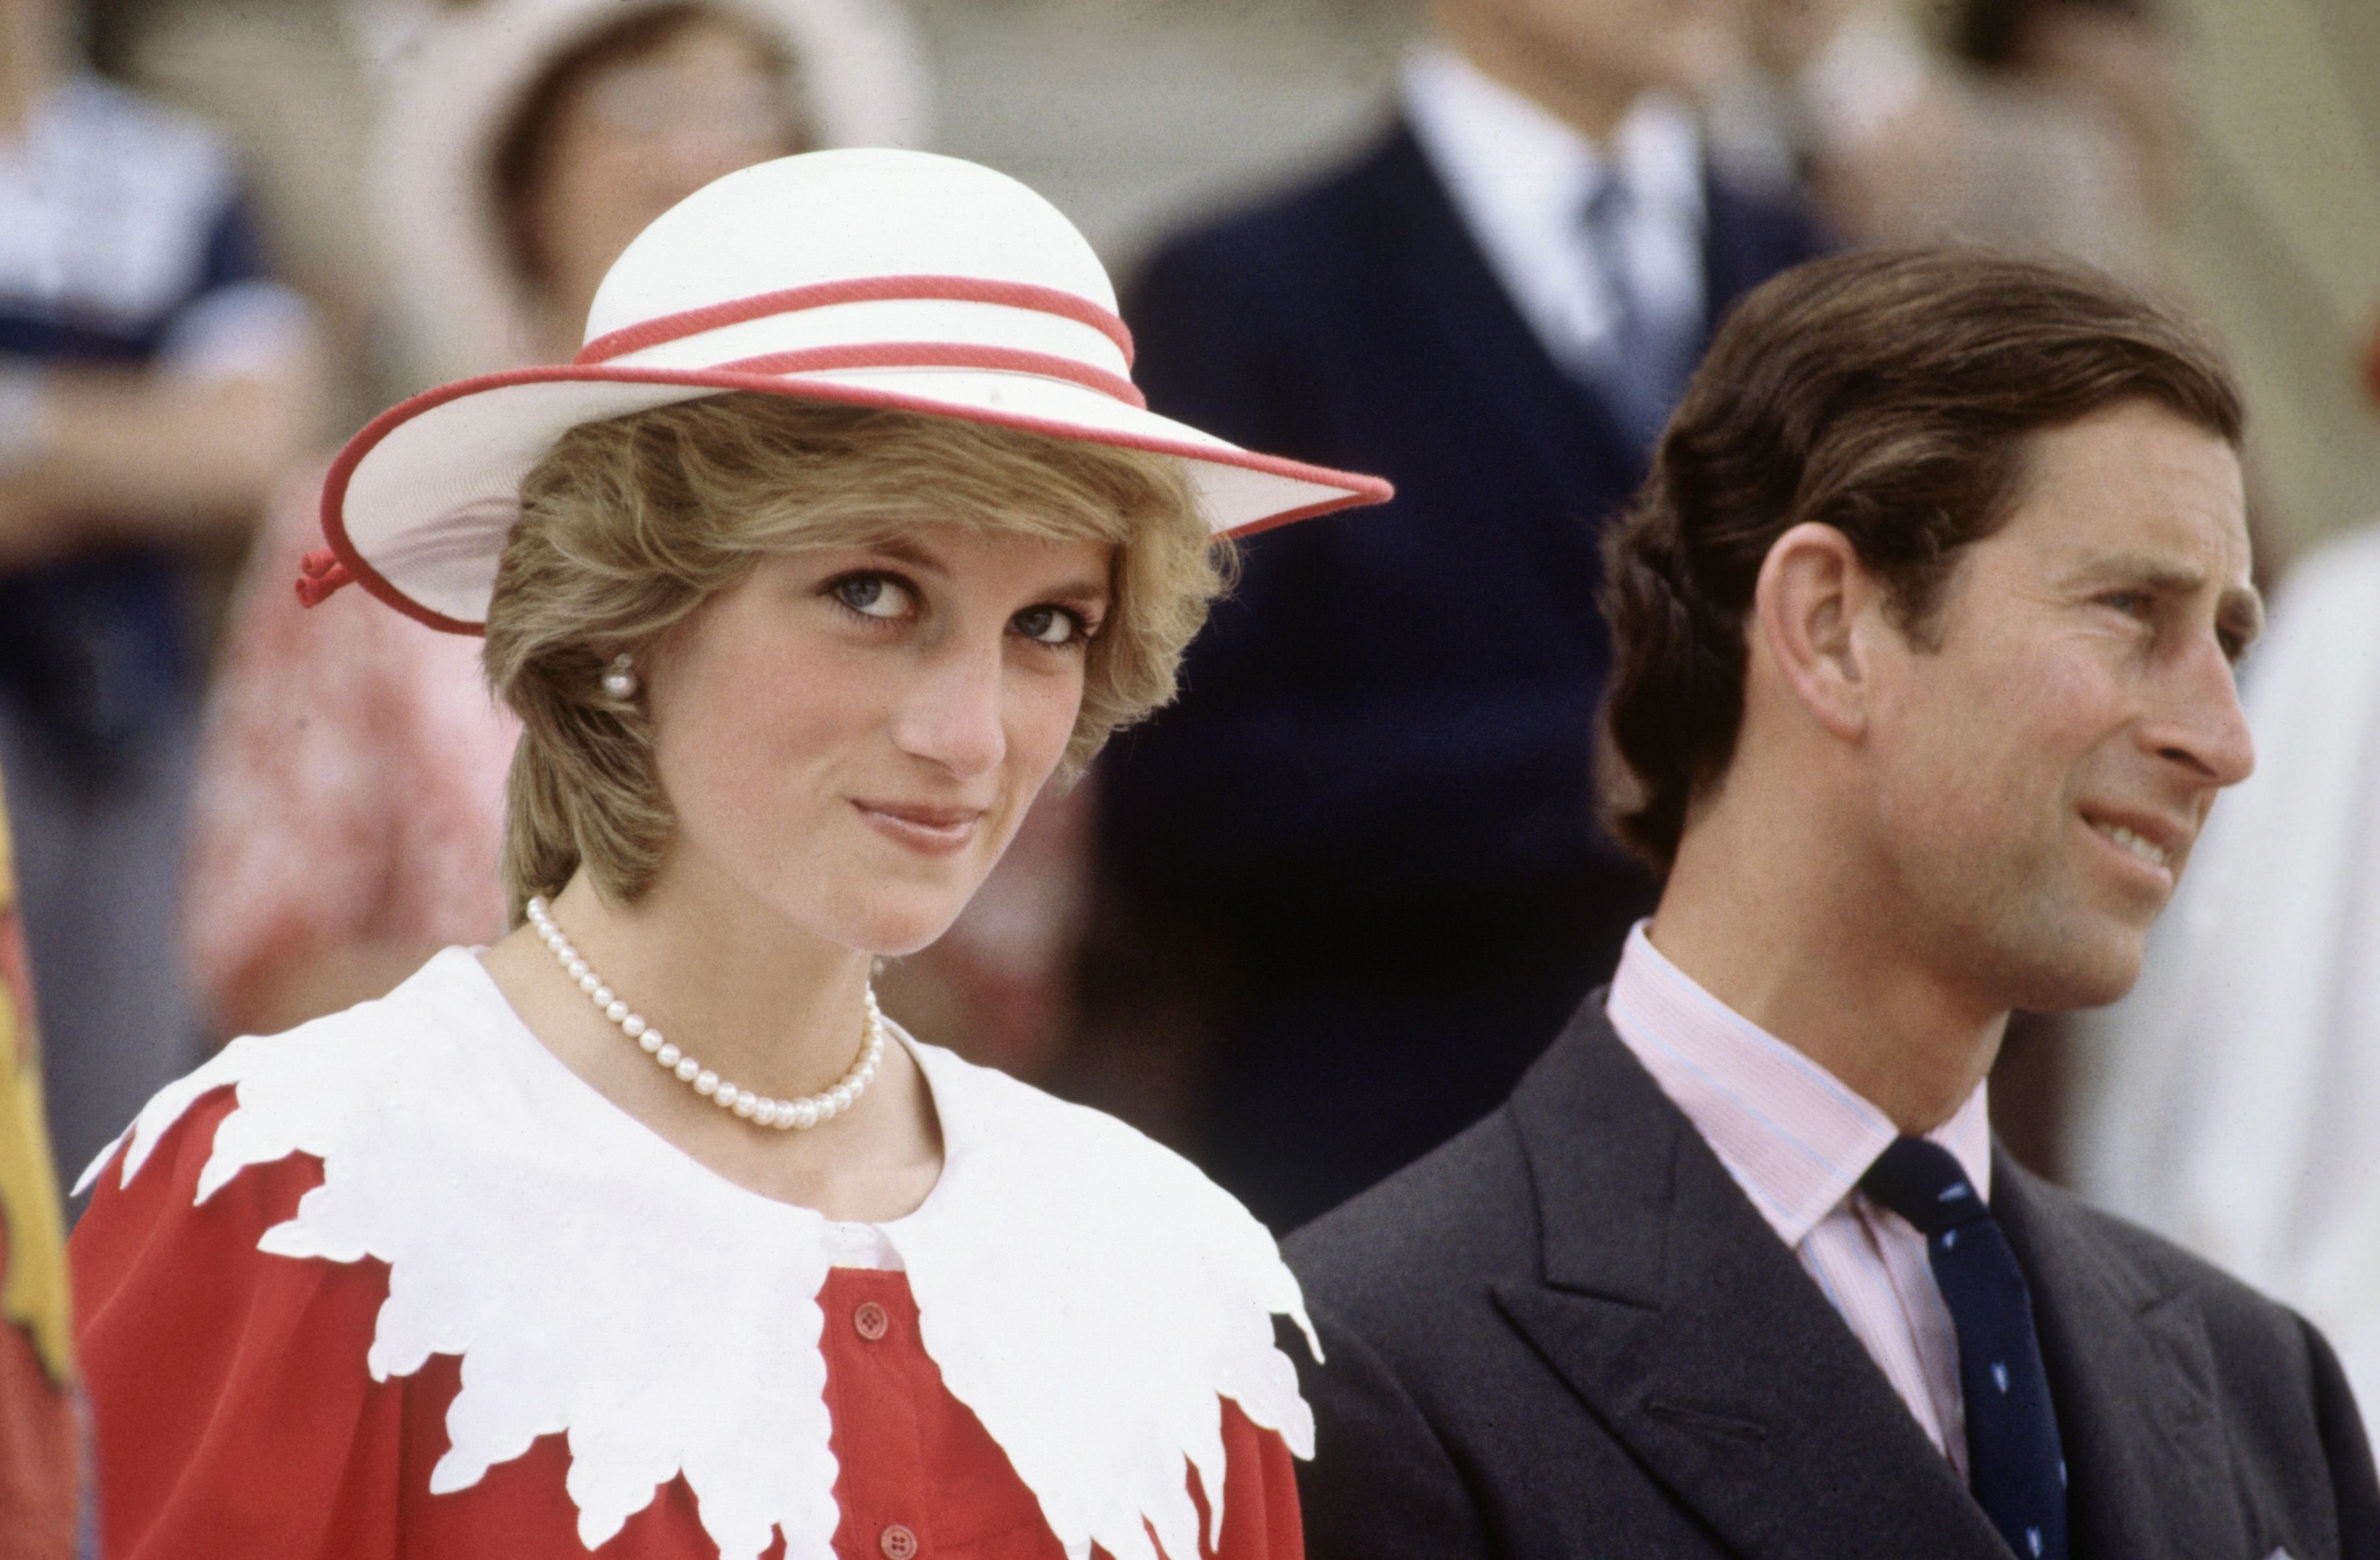 Diana Princess of Wales et Prince Charles lors de la tournée royale du Canada le 29 juin 1983 à Edmonton, Alberta, Canada. | Photo : Getty Images